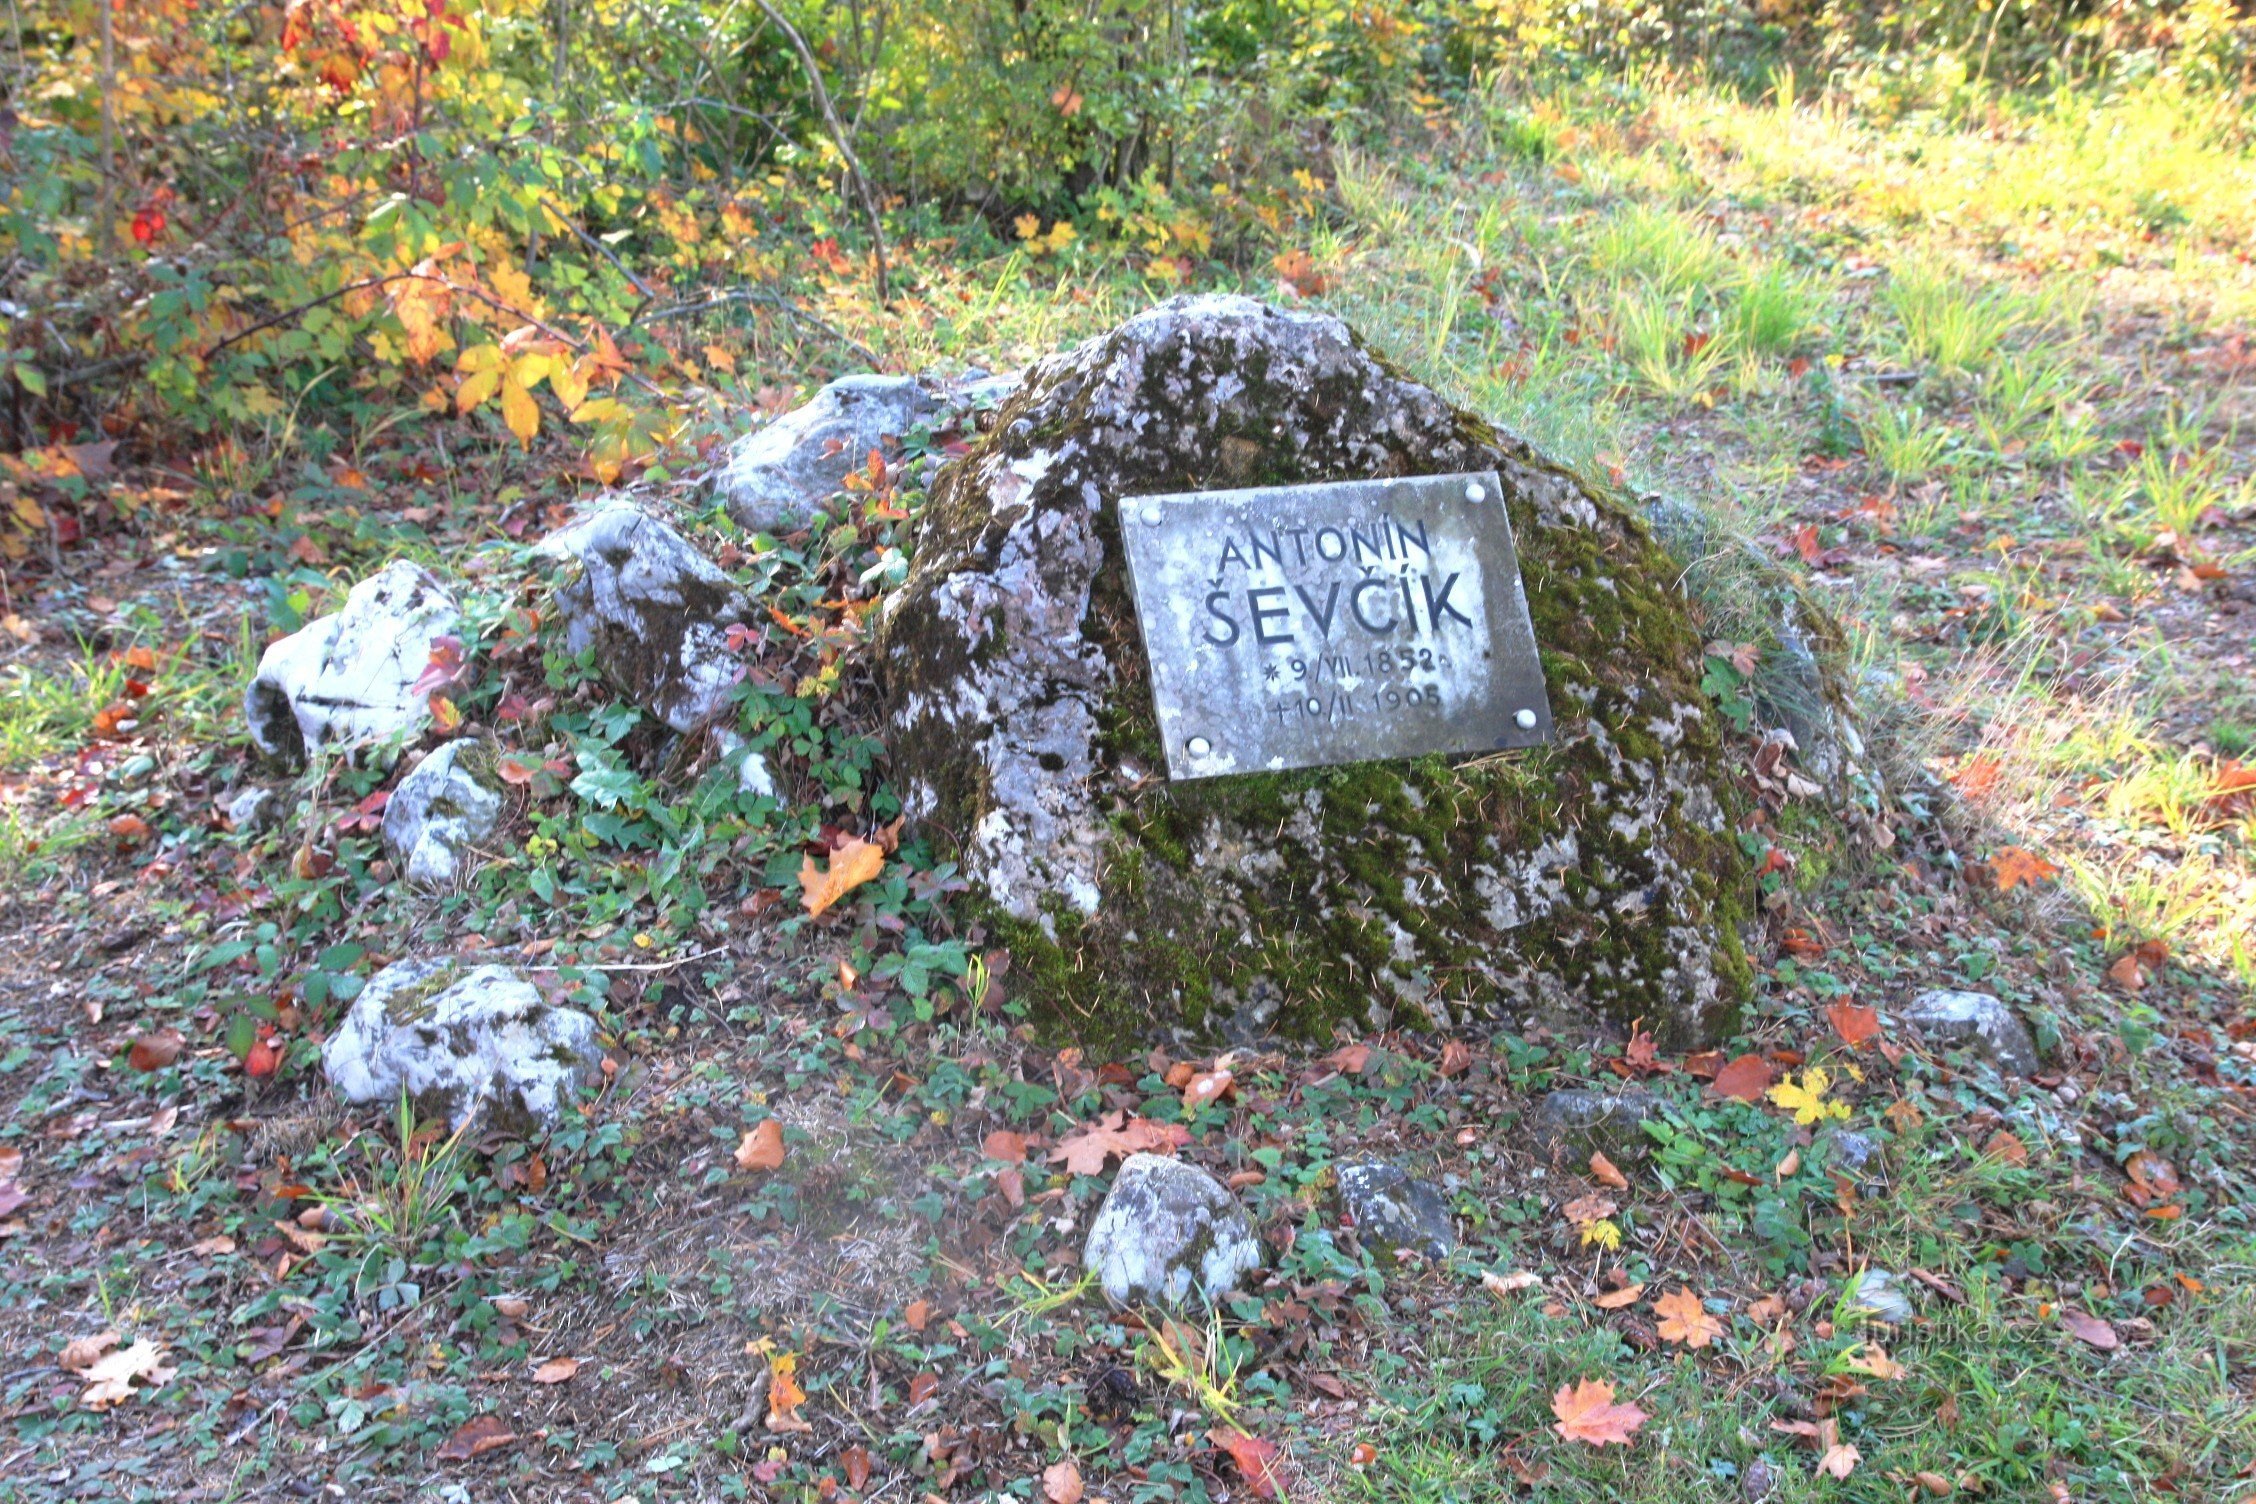 A jornada de Schatt começa no monumento a A. Ševčík